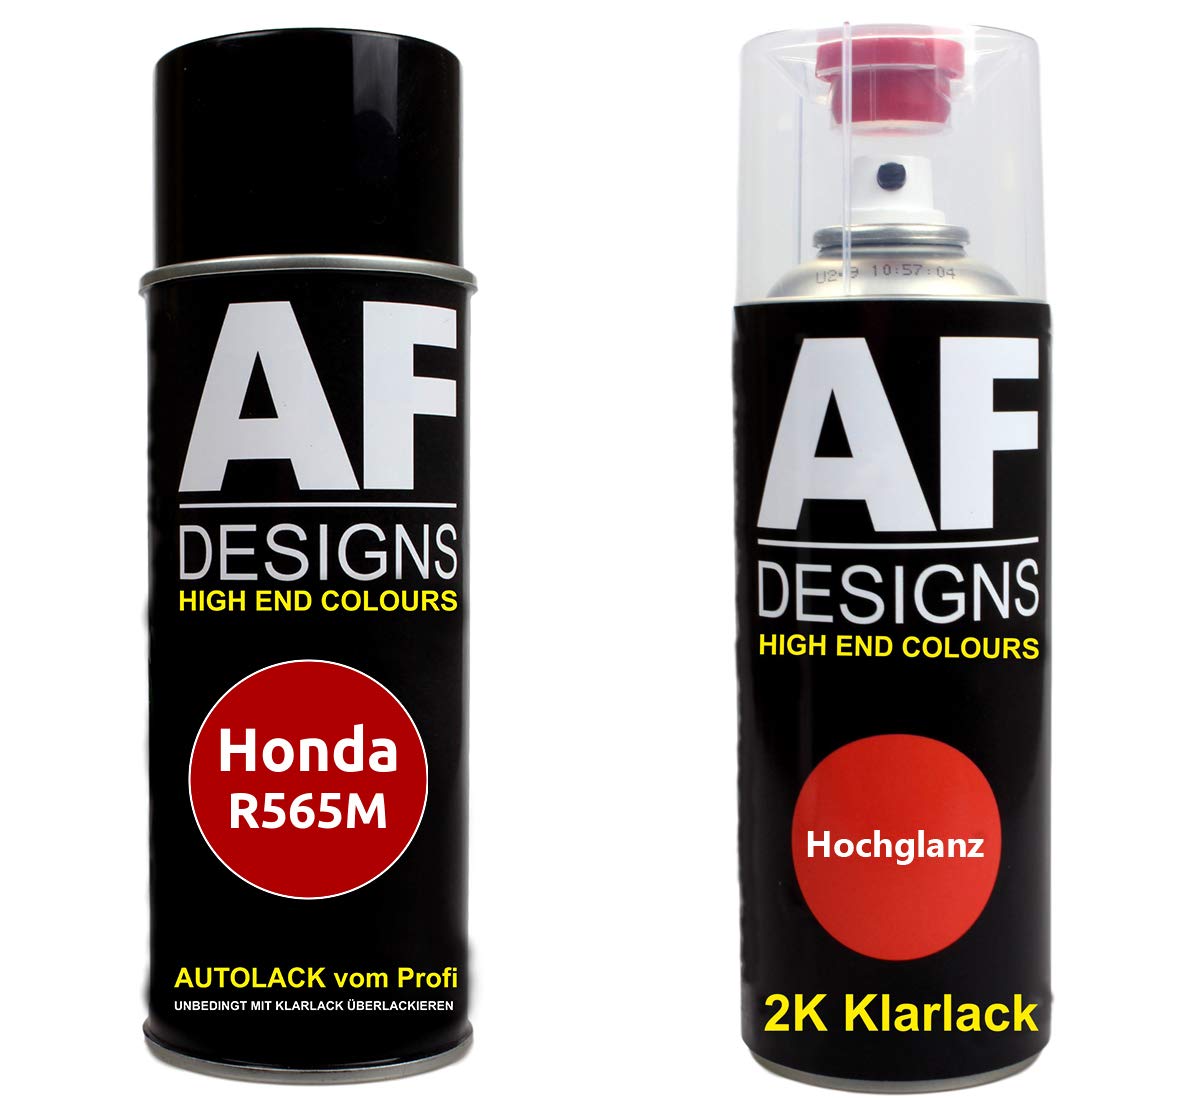 Autolack Spraydose Set für Honda R565M Premium Crystal Red Metallic 2K Klarlack Basislack Sprühdose Spraydosen 2x400ml von Alex Flittner Designs